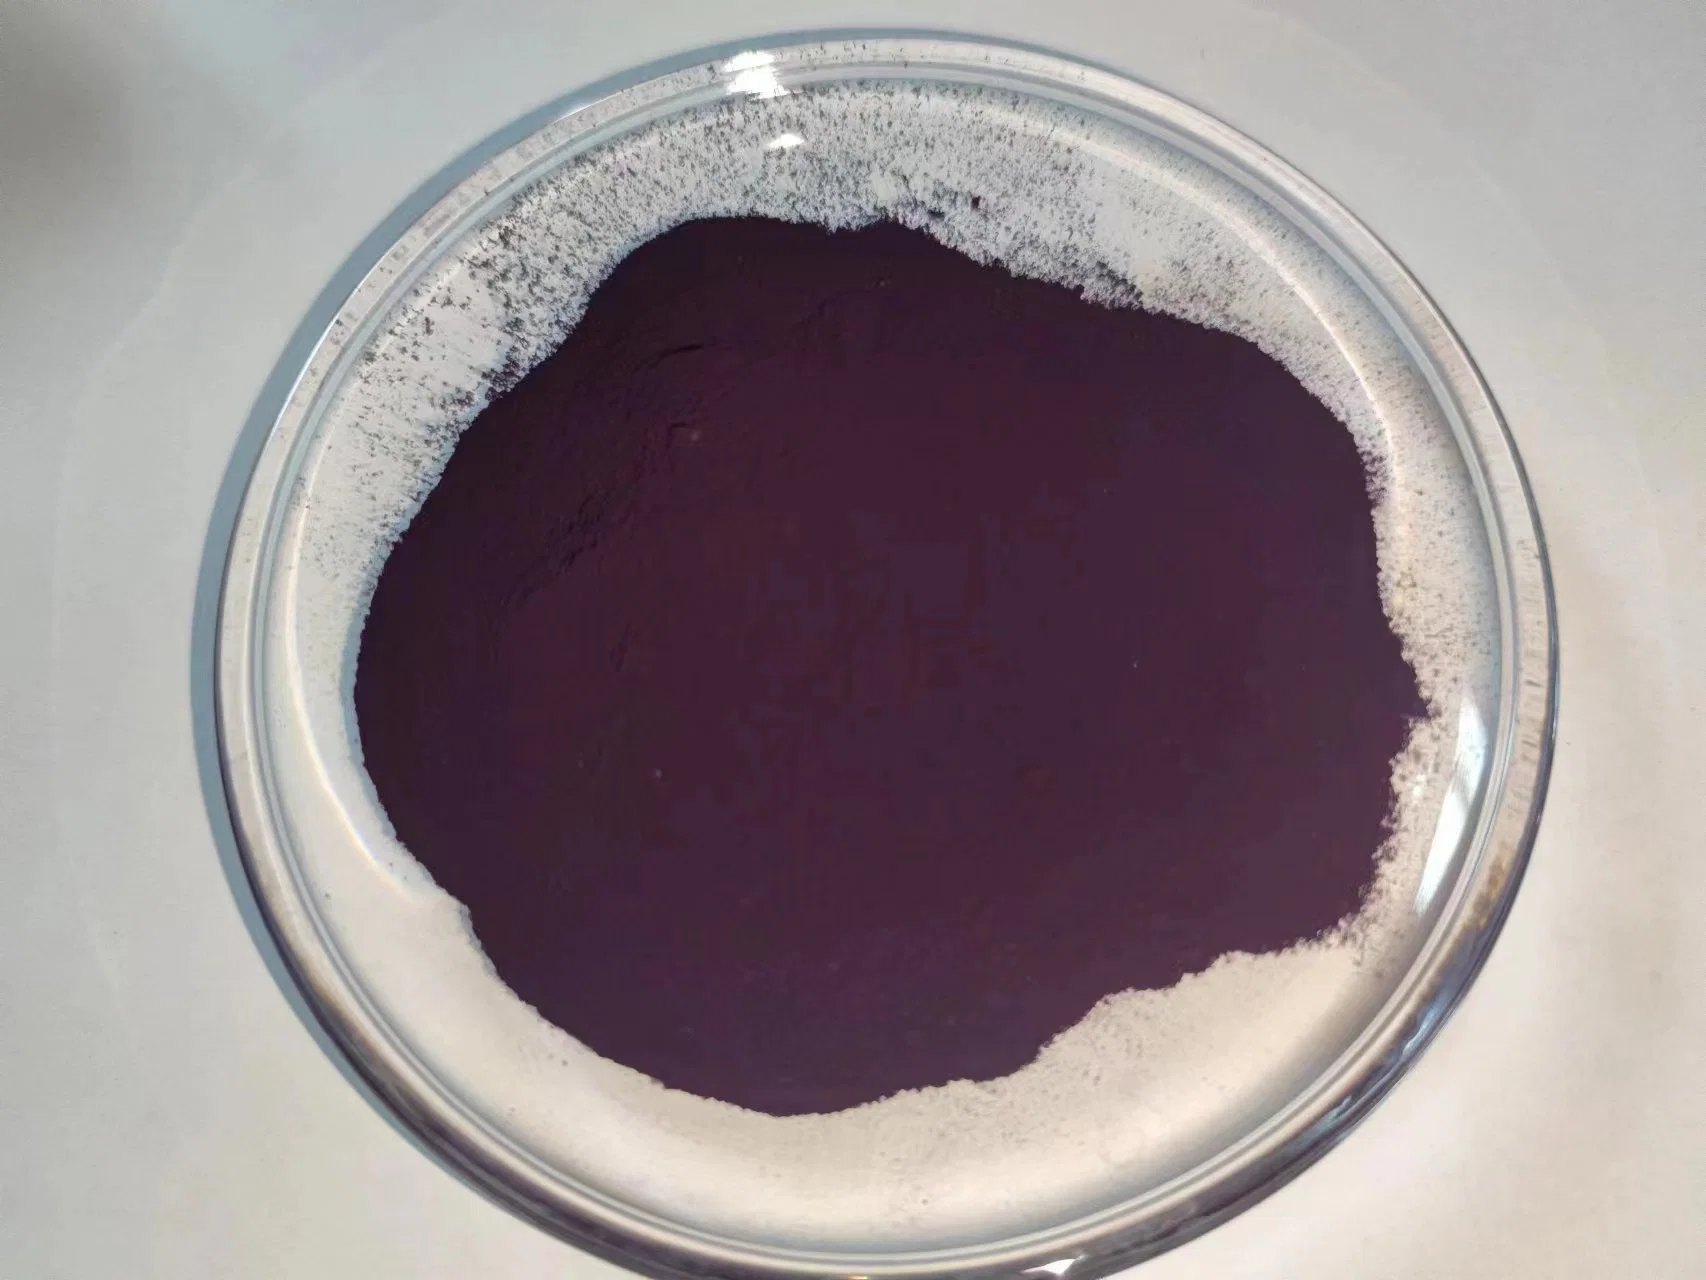 Gute Qualität Rotton Pigment Violet 23 zum Beschichten und Farbe